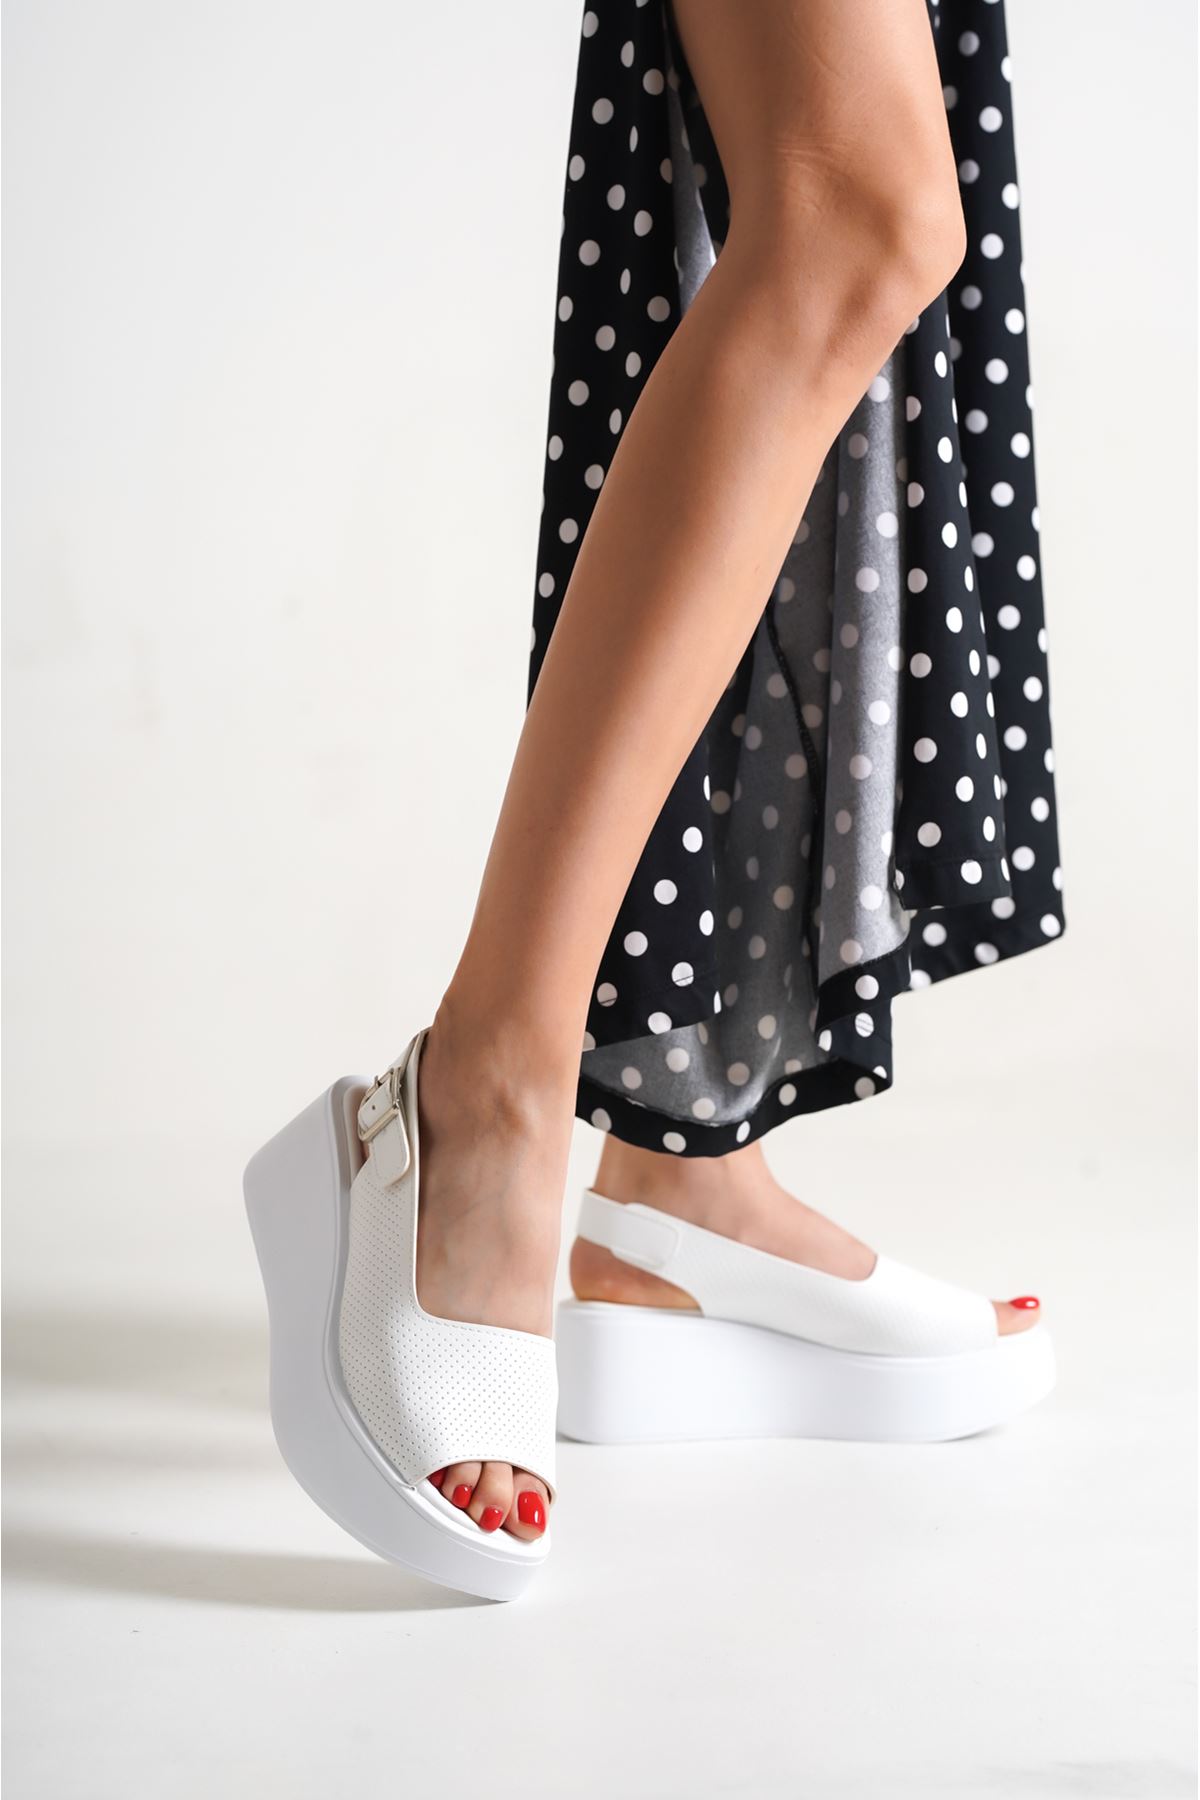 Rubes Beyaz Dolgu Topuklu Kadın Ayakkabı